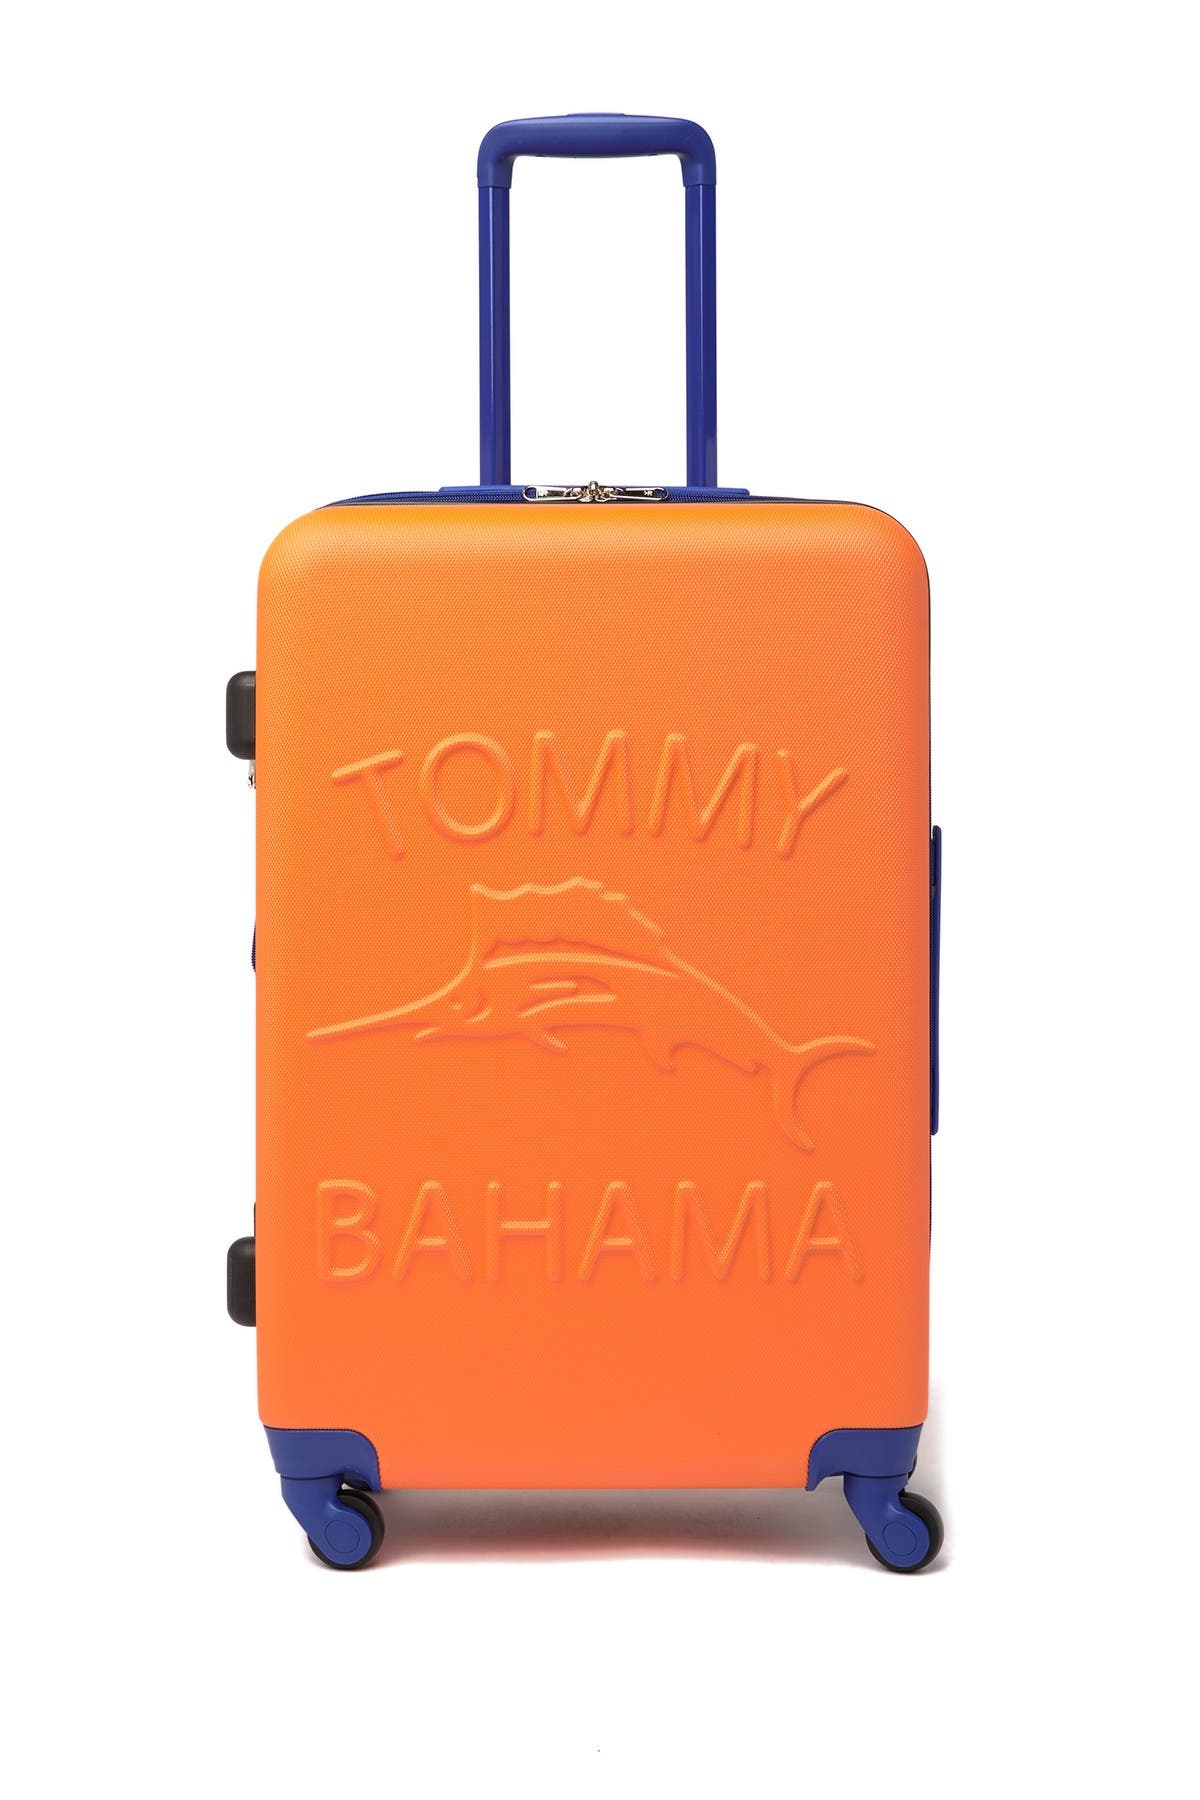 tommy bahama hardside luggage reviews